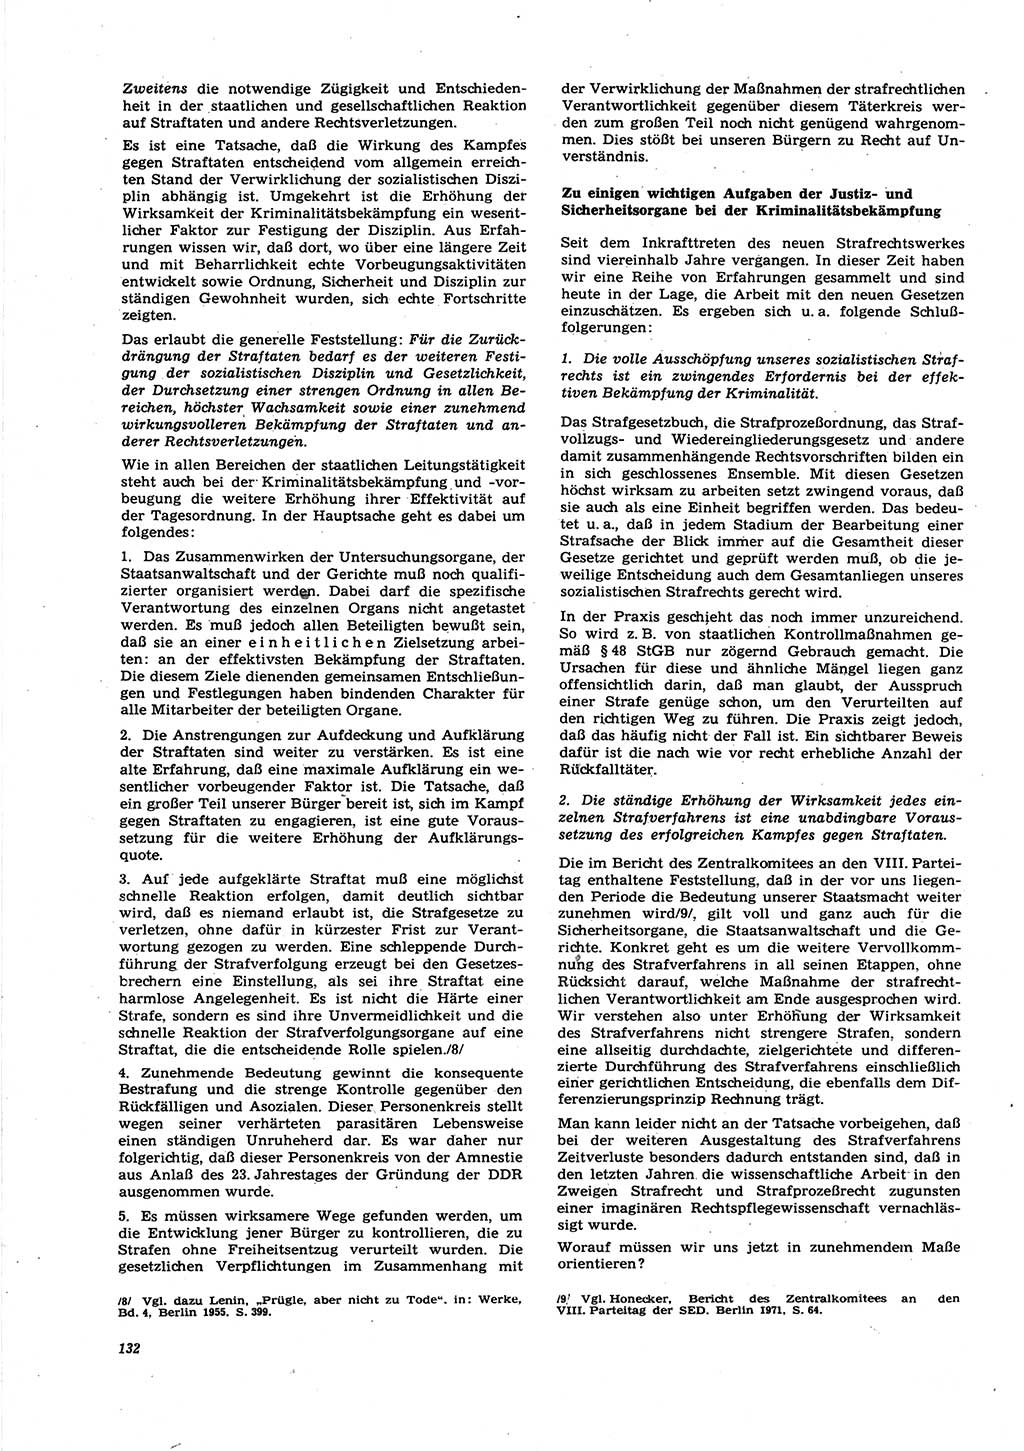 Neue Justiz (NJ), Zeitschrift für Recht und Rechtswissenschaft [Deutsche Demokratische Republik (DDR)], 27. Jahrgang 1973, Seite 132 (NJ DDR 1973, S. 132)